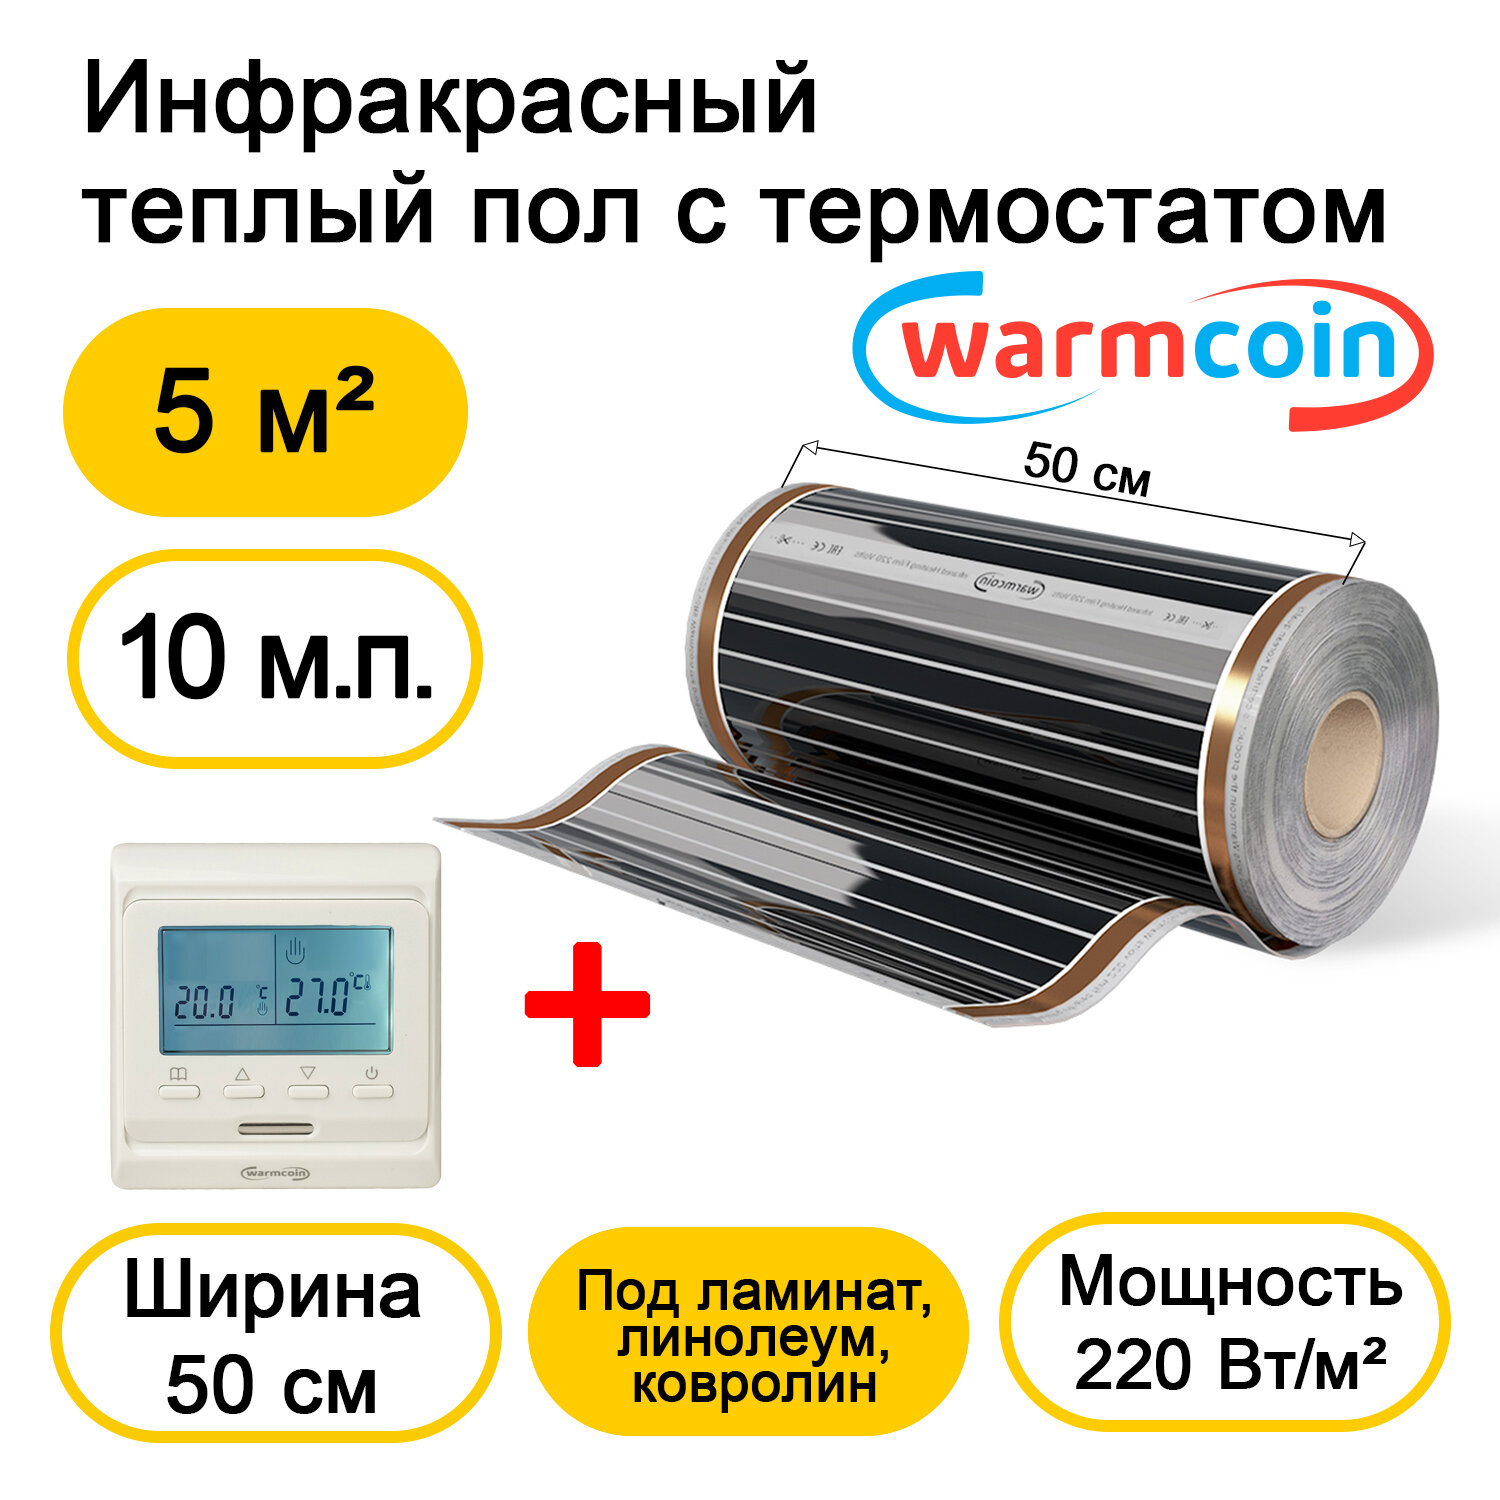 Теплый пол Warmcoin инфракрасный 50см, 220 Вт/м.кв. с электронным терморегулятором, 10 м.п